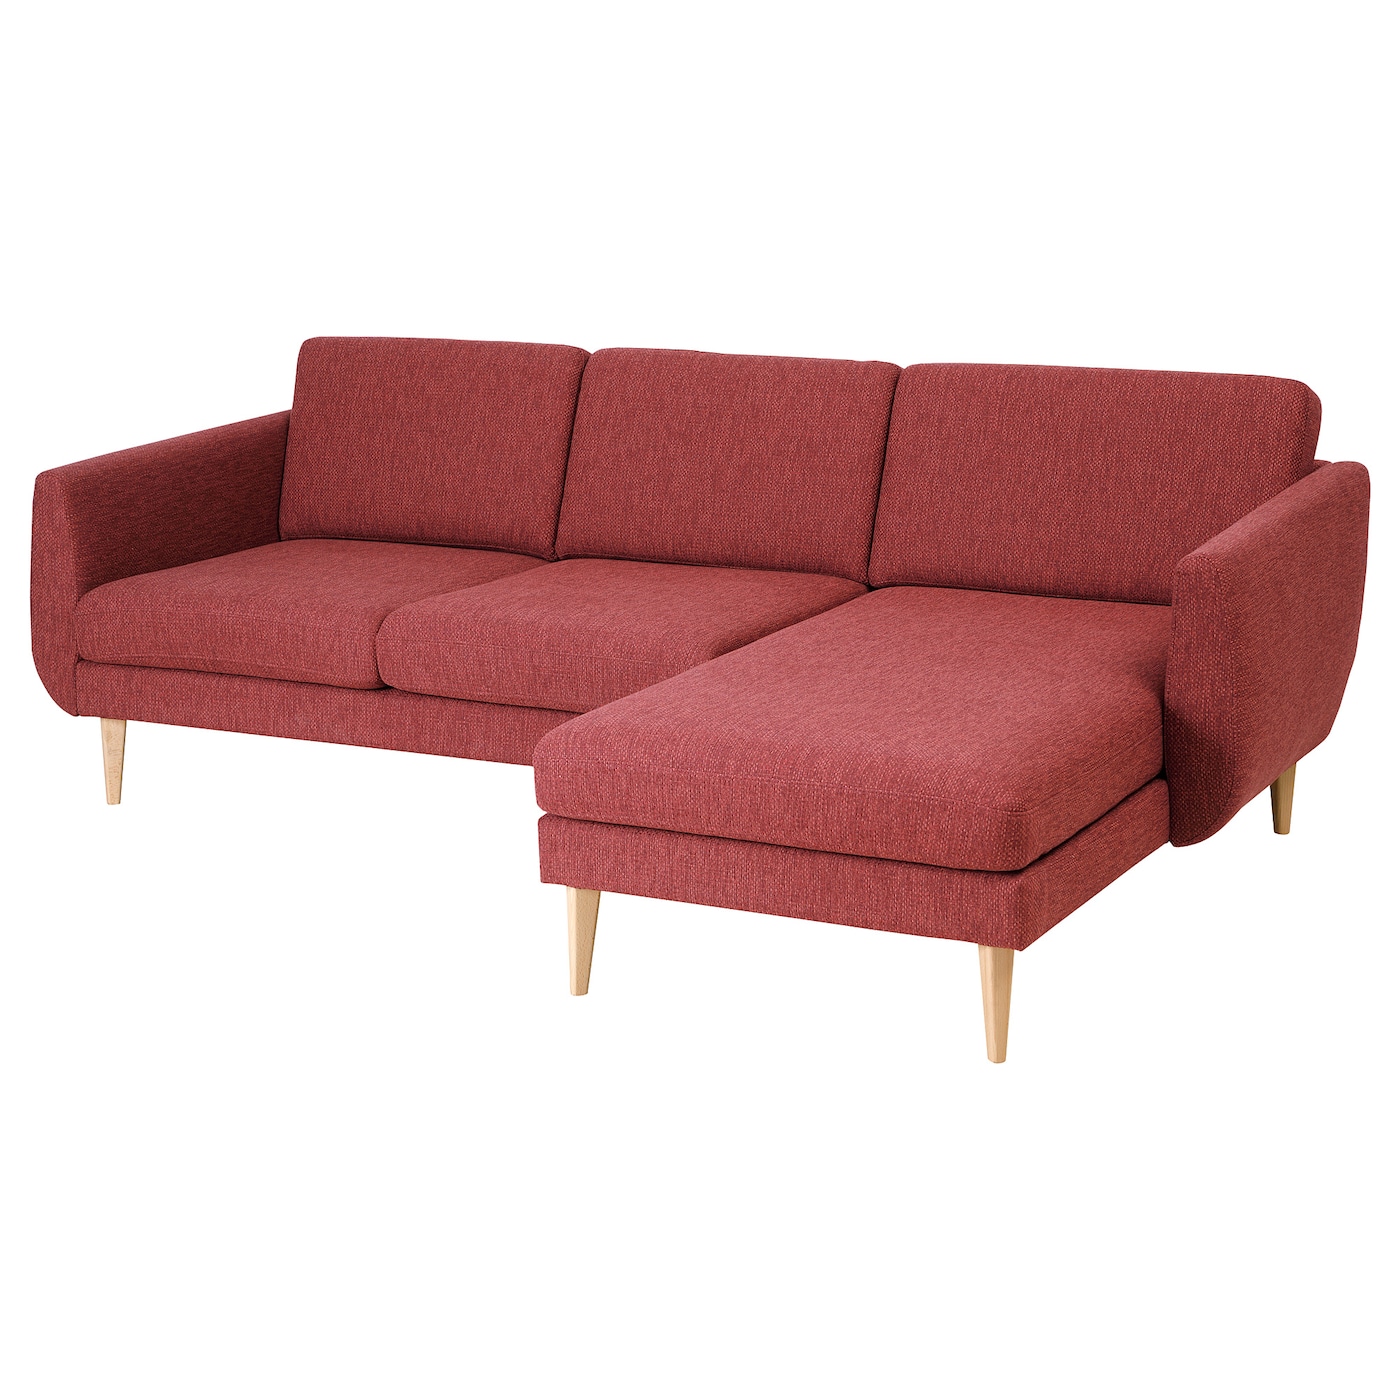 СМЕДСТОРП 3-местный диван + диван, Лейде/красный/коричневый дуб SMEDSTORP IKEA